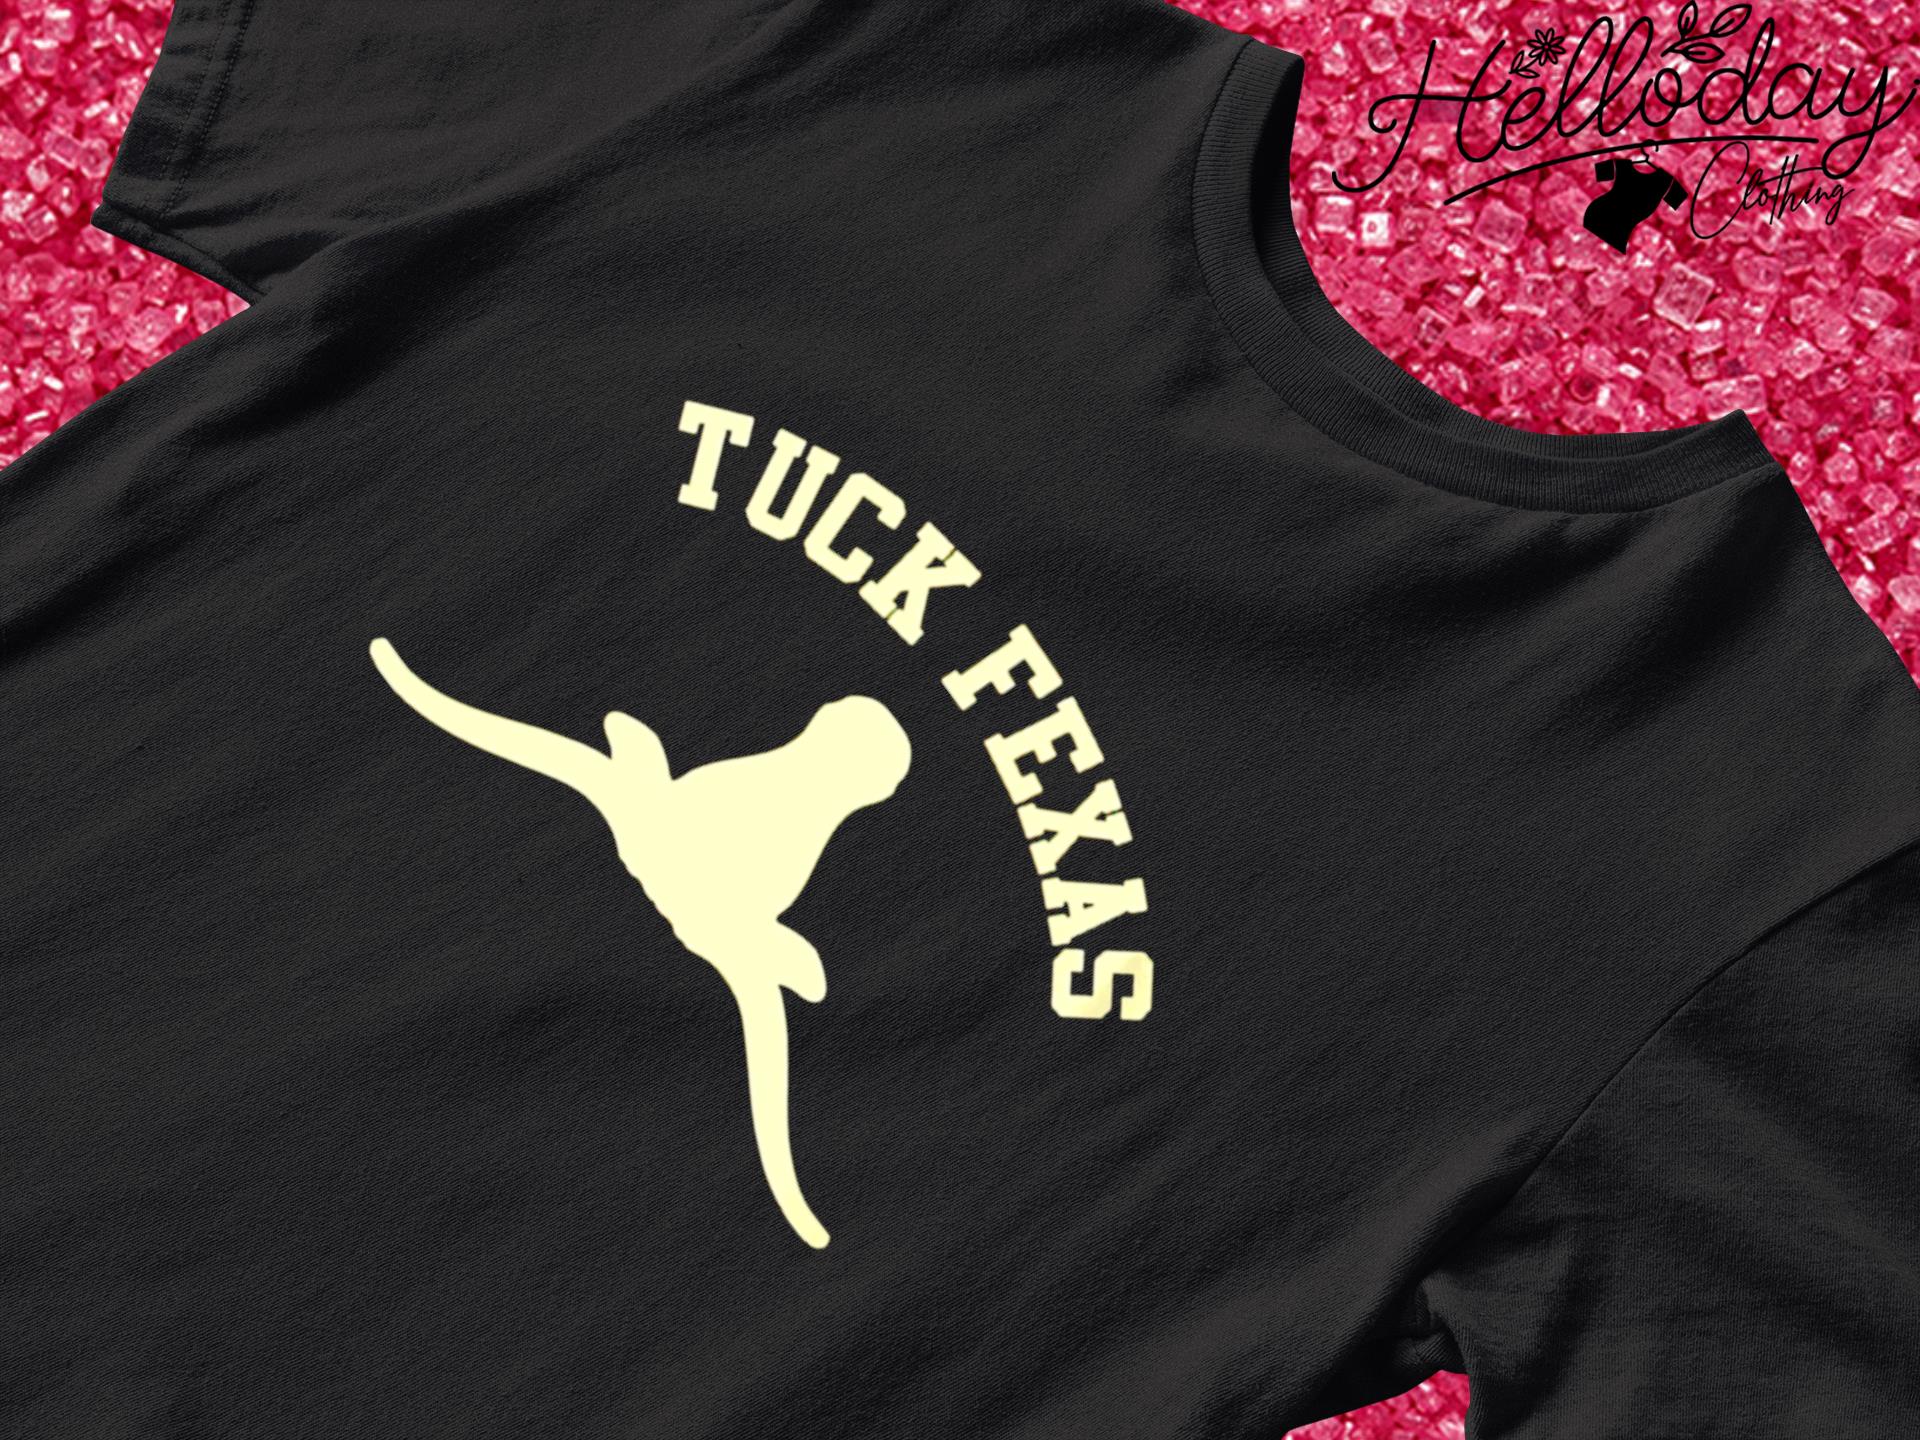 Tuck fexas Horns Down Texas shirt